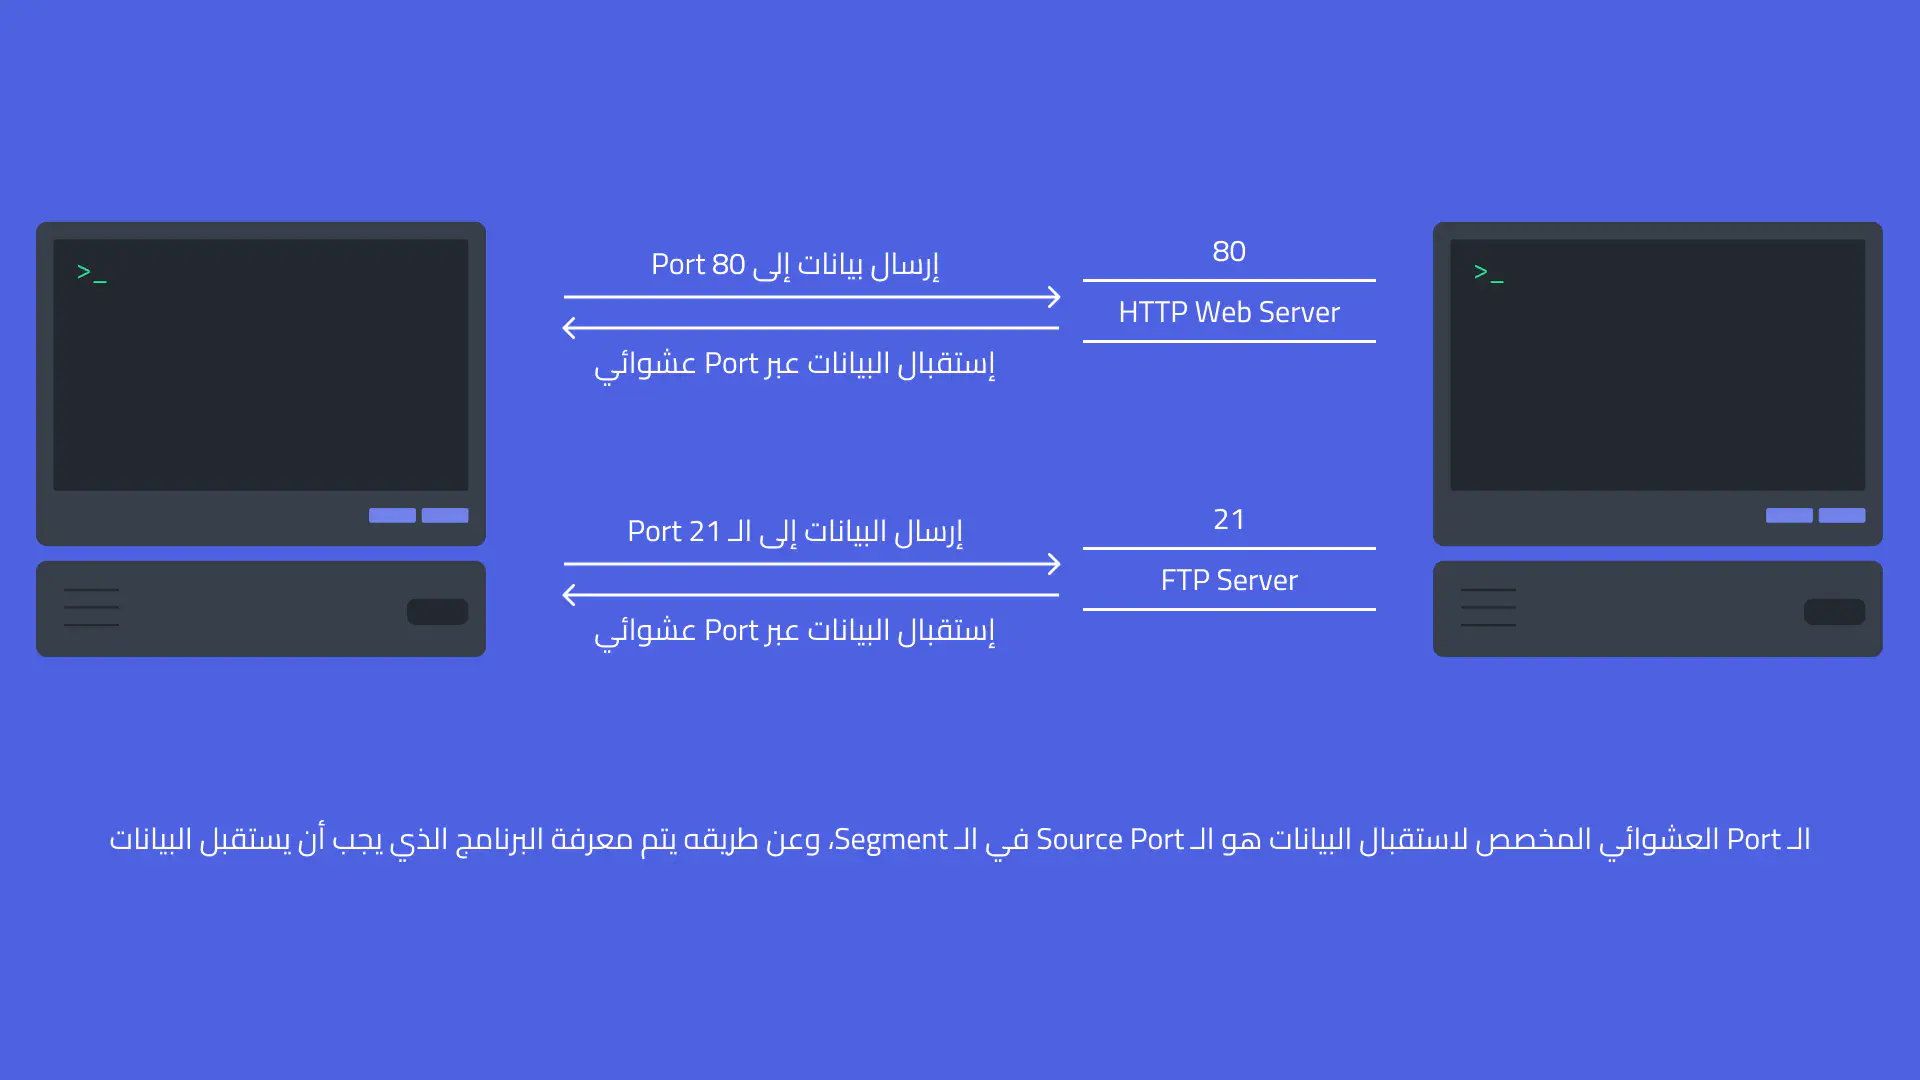 صورة توضيحية لاستخدام أكثر من Process للشبكة وتفريق نظام التشغيل بين الـ Processes باستخدام الـ Port Number